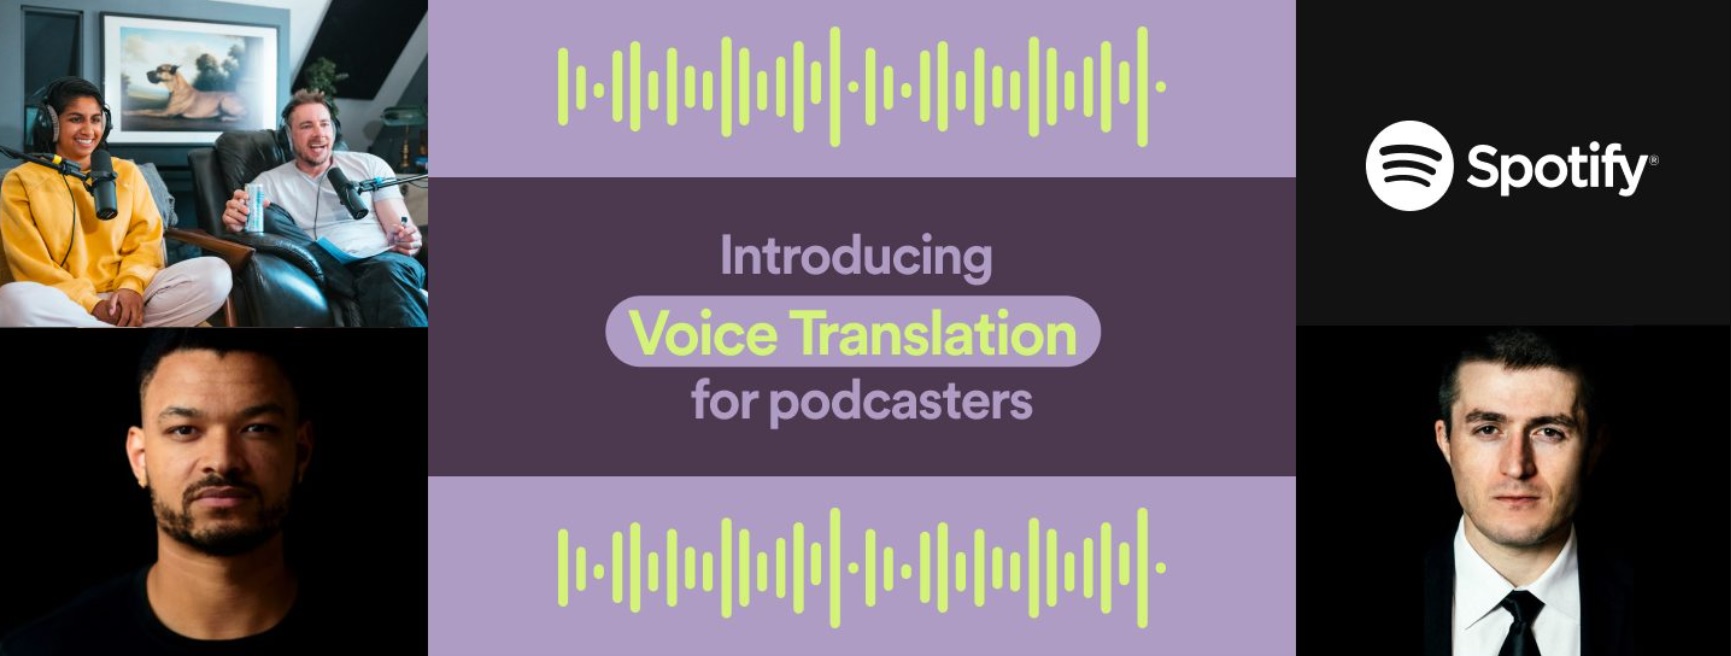 Spotify traducciones de voz con IA